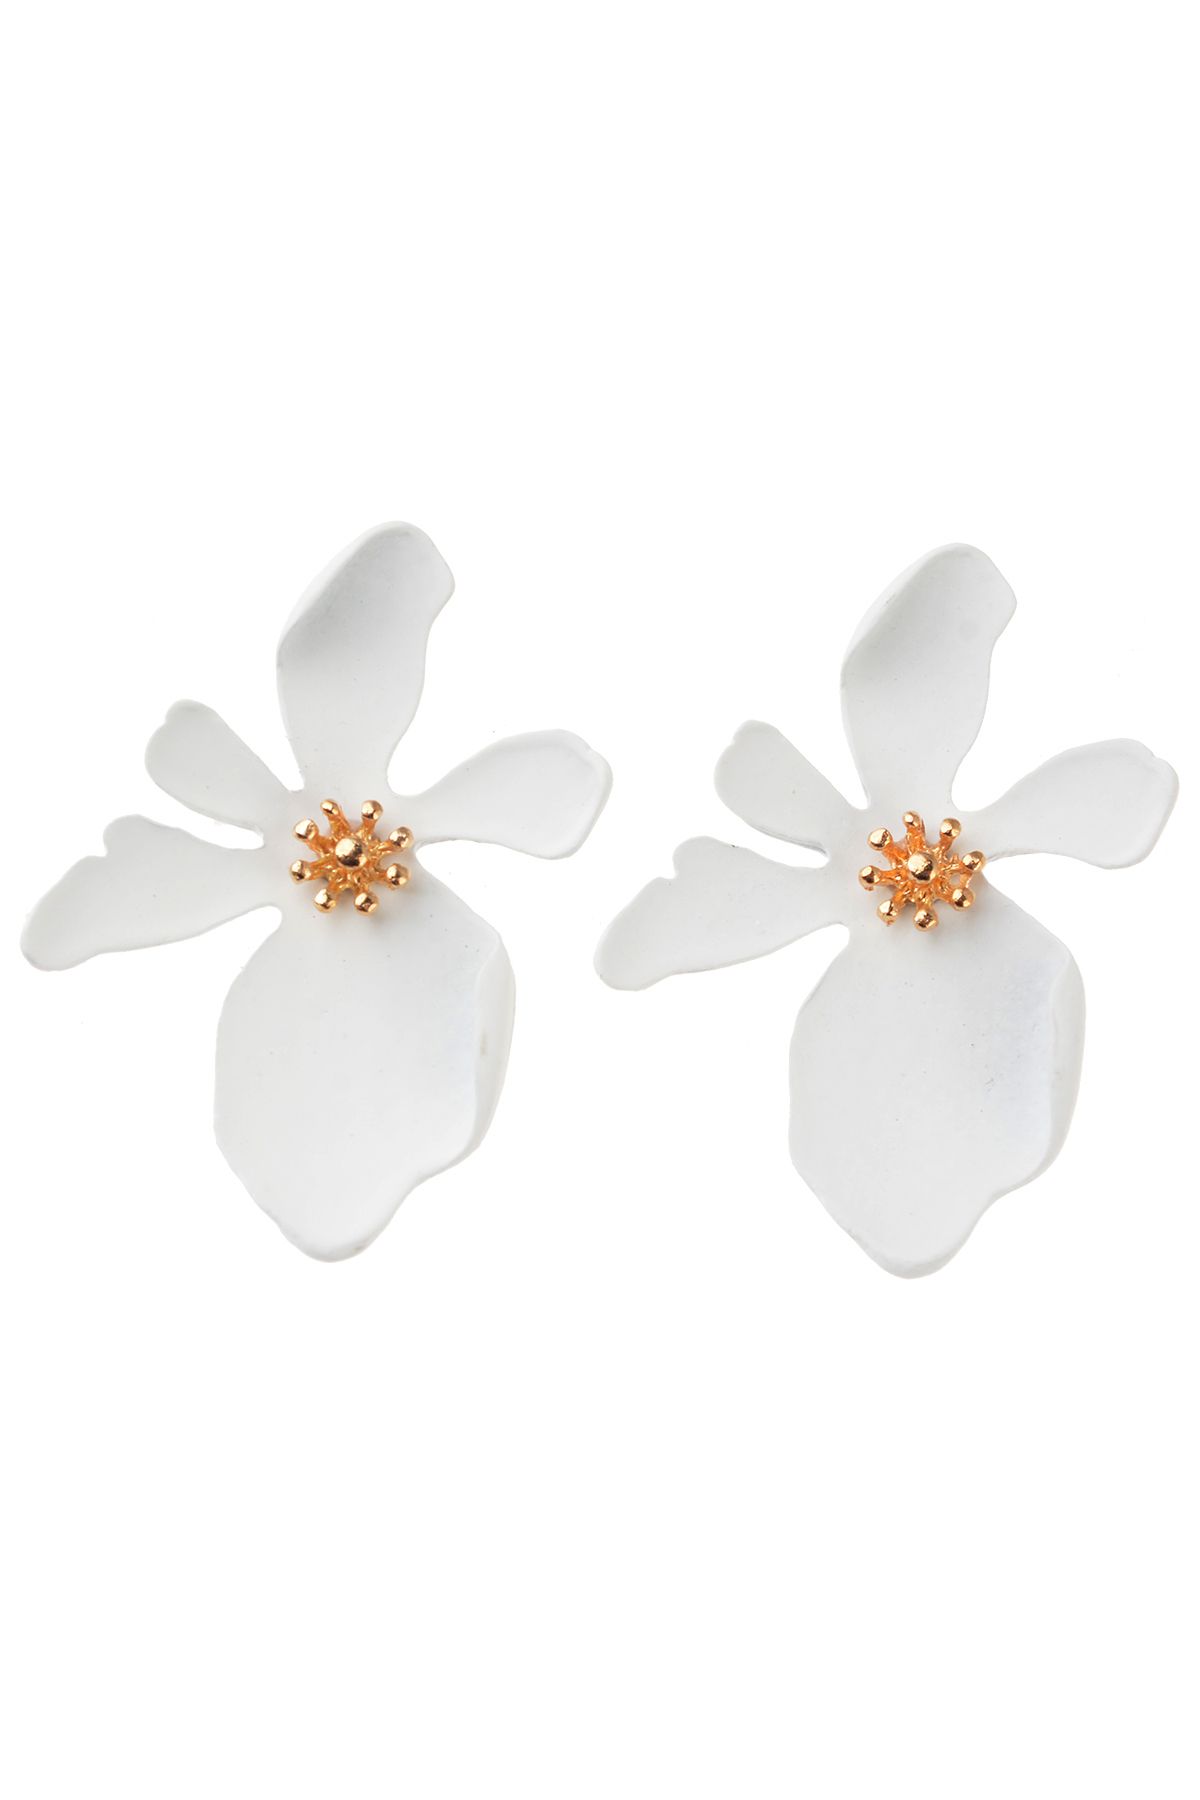 Pelin Aksesuar Beyaz Çiçek Küpe